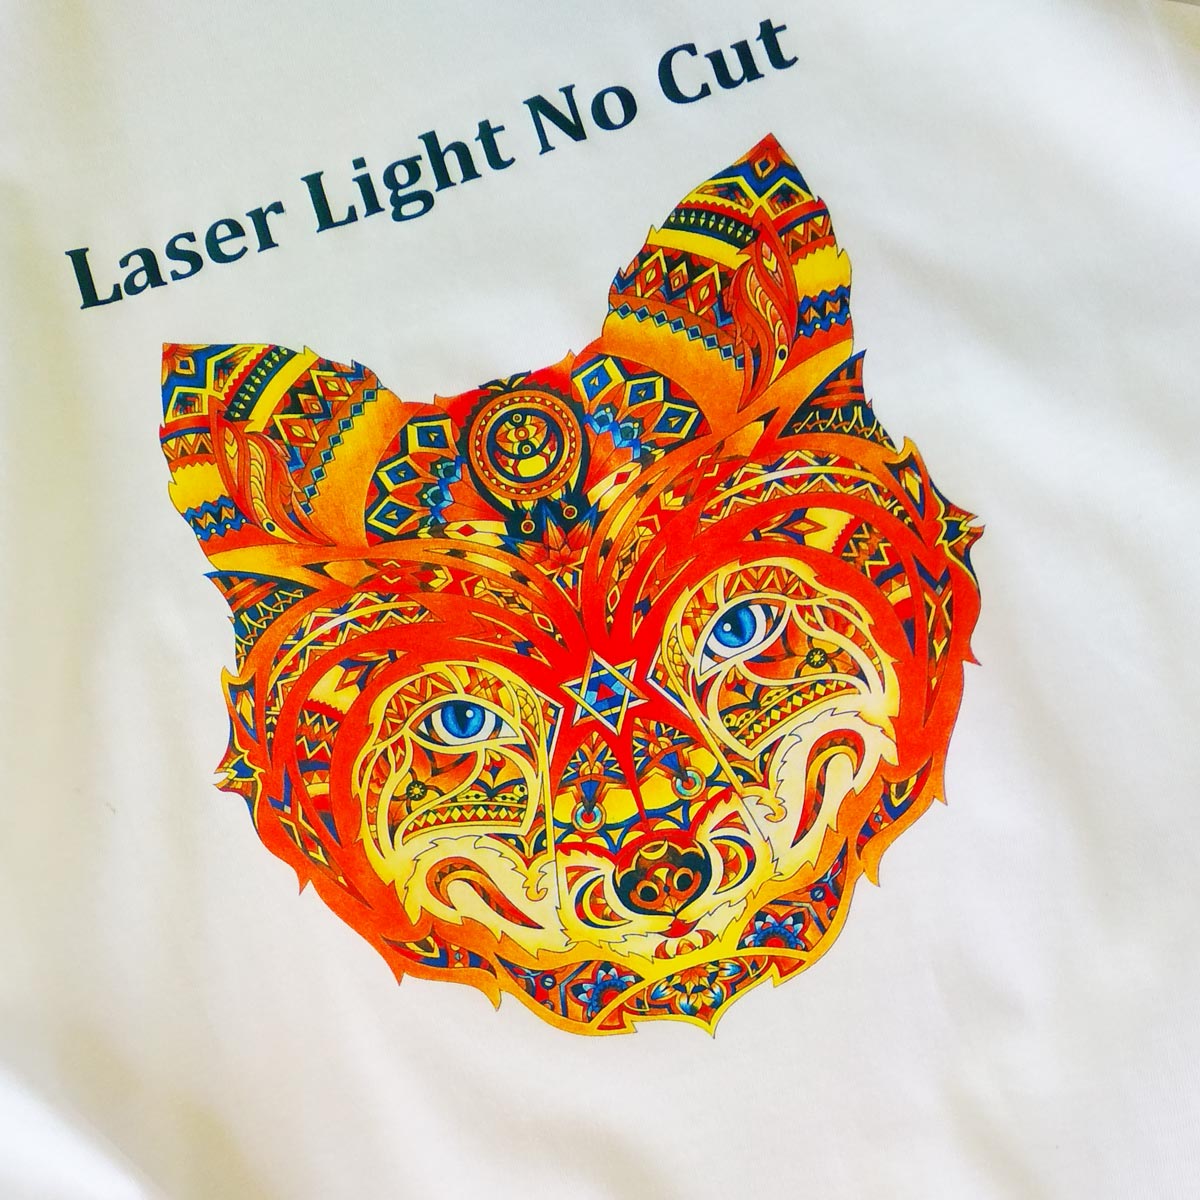 Laser Light No Cut - papier transferowy do drukarek z białym tonerem na jasne tkaniny - 10 arkuszy